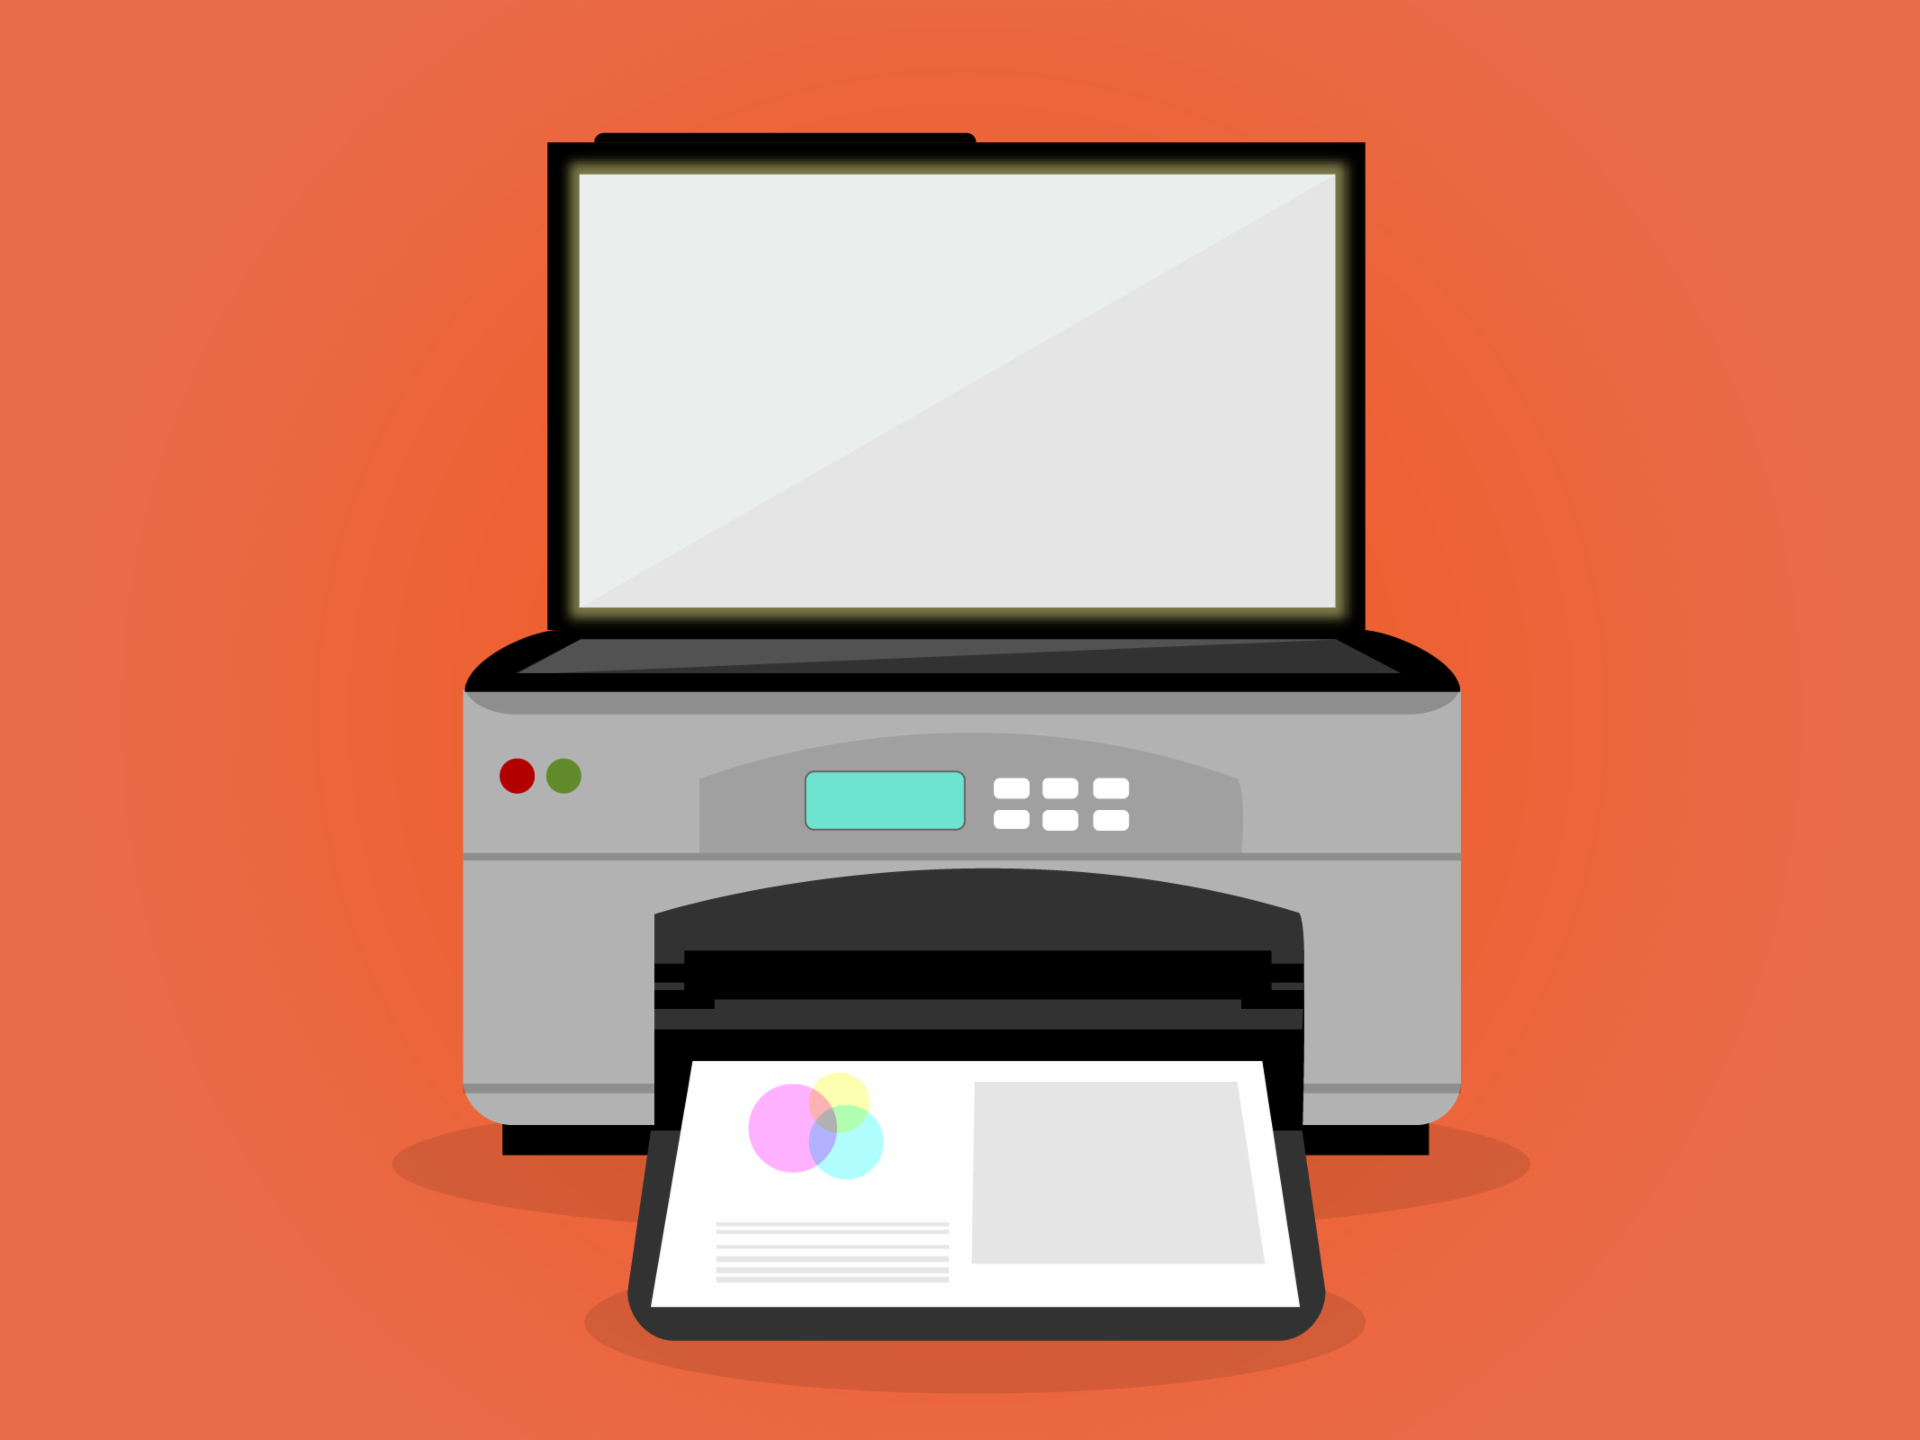 Impressora e scanner, impressora multifuncional, periférica de um computador de mesa